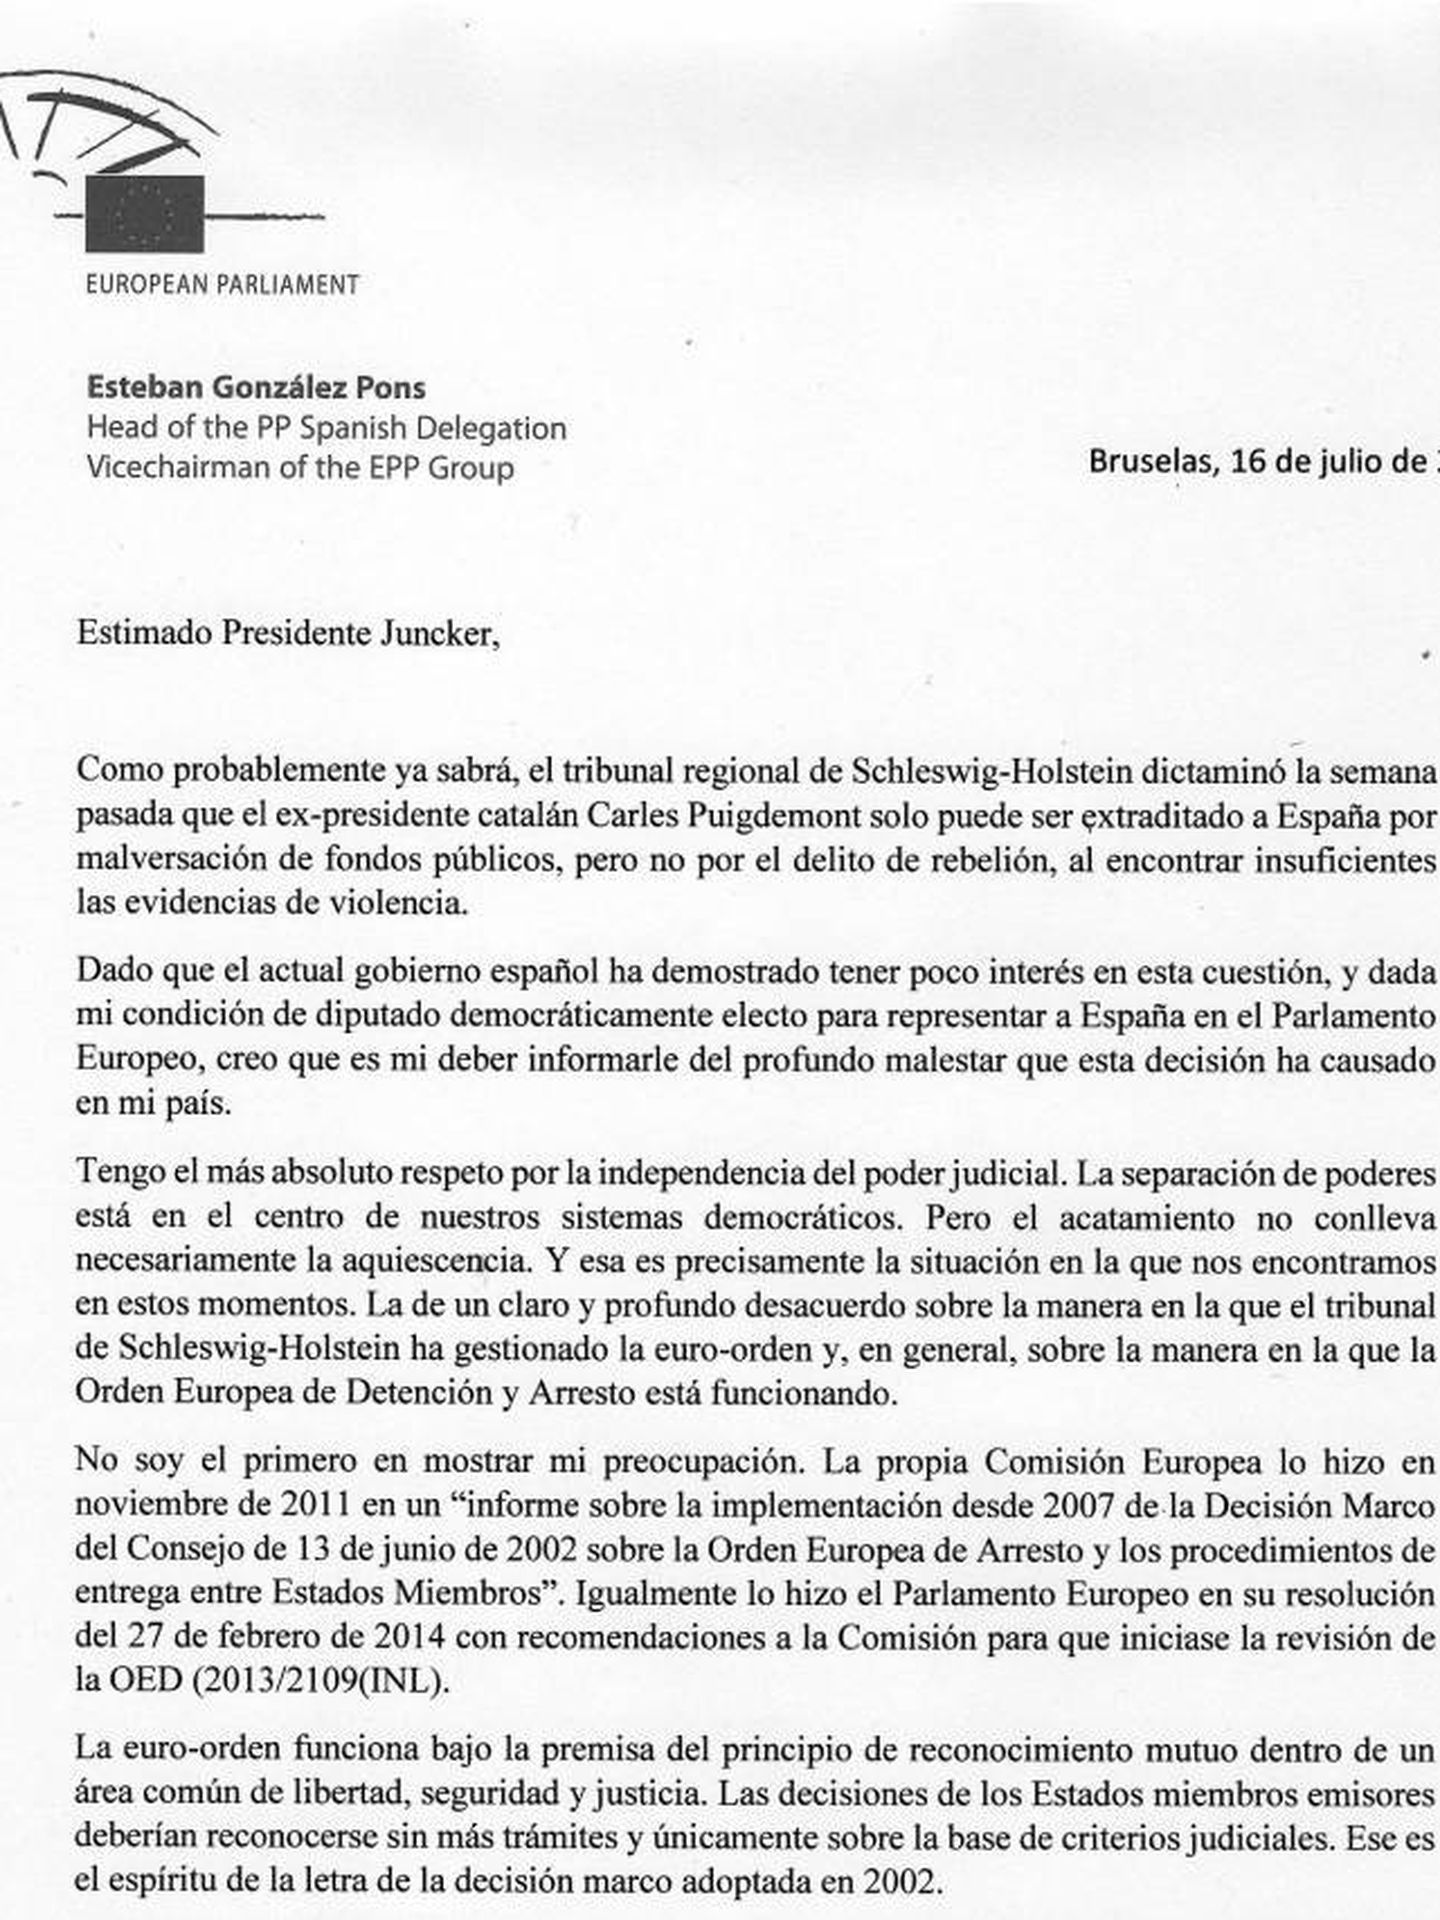 Pinche en la imagen para leer la carta de González Pons a Juncker.